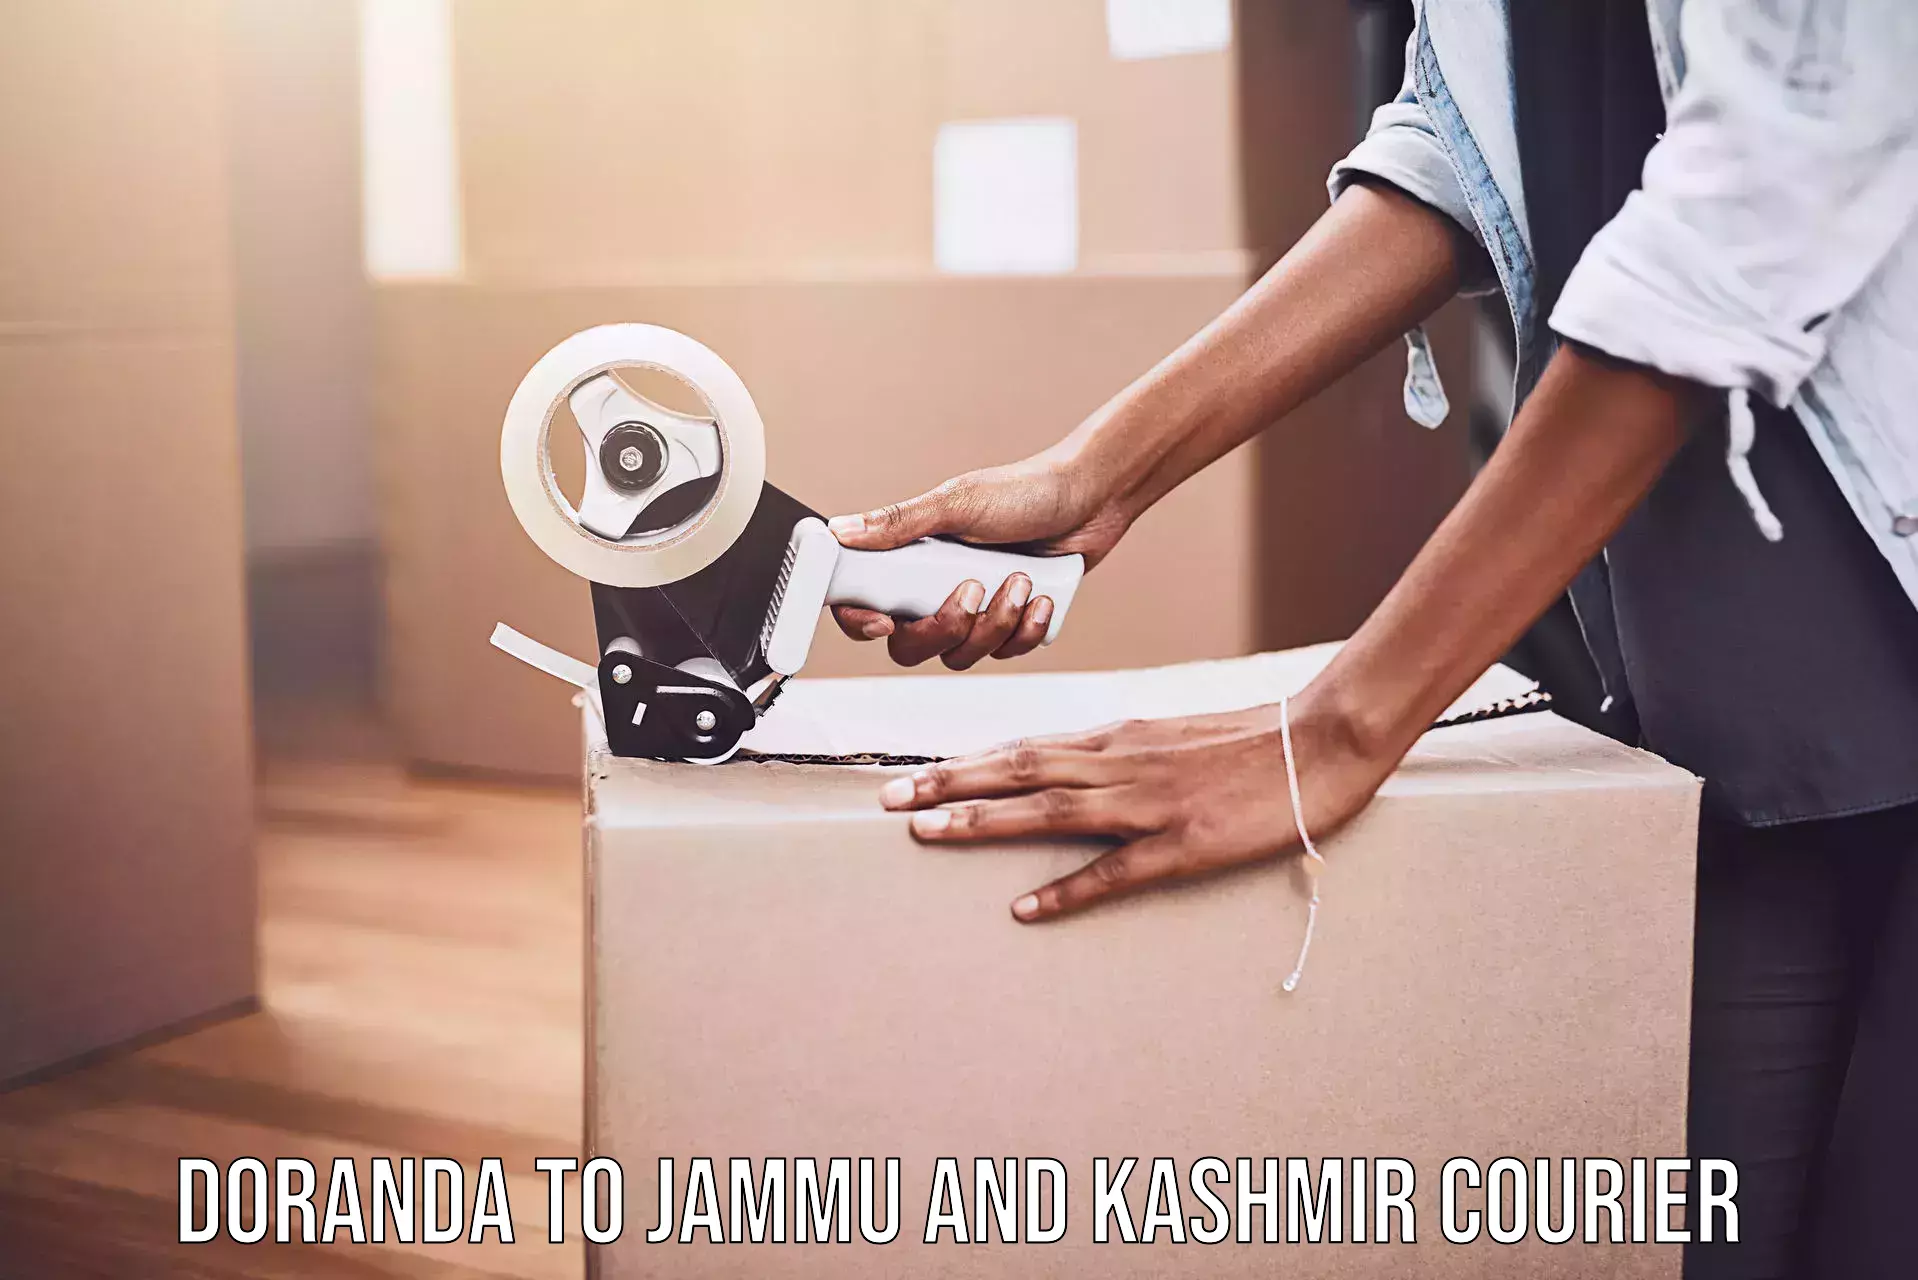 Customer-centric shipping Doranda to Jammu and Kashmir